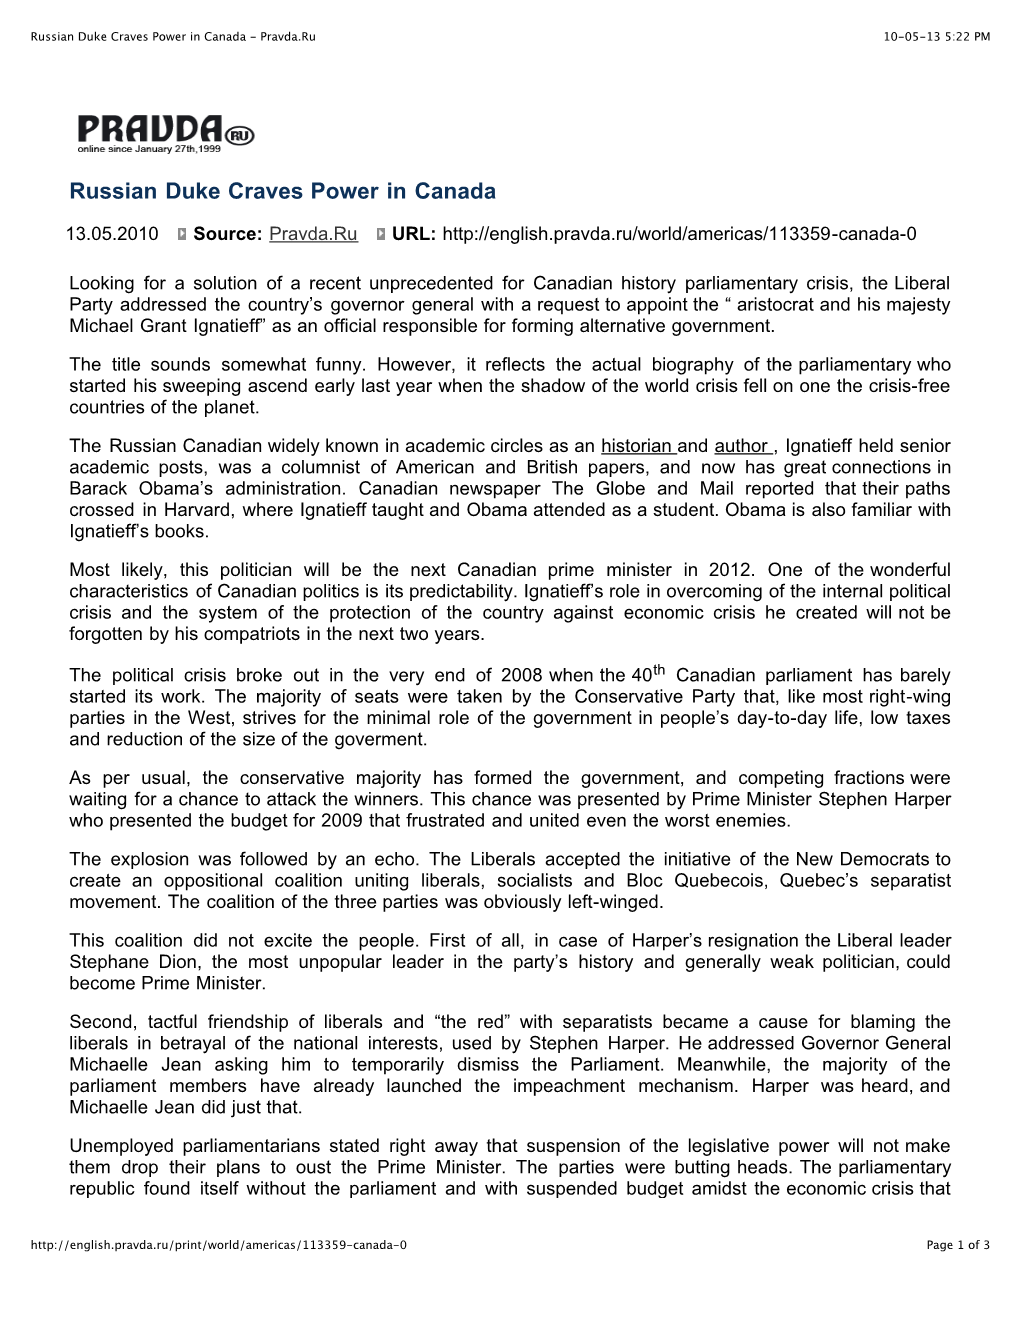 Russian Duke Craves Power in Canada - Pravda.Ru 10-05-13 5:22 PM